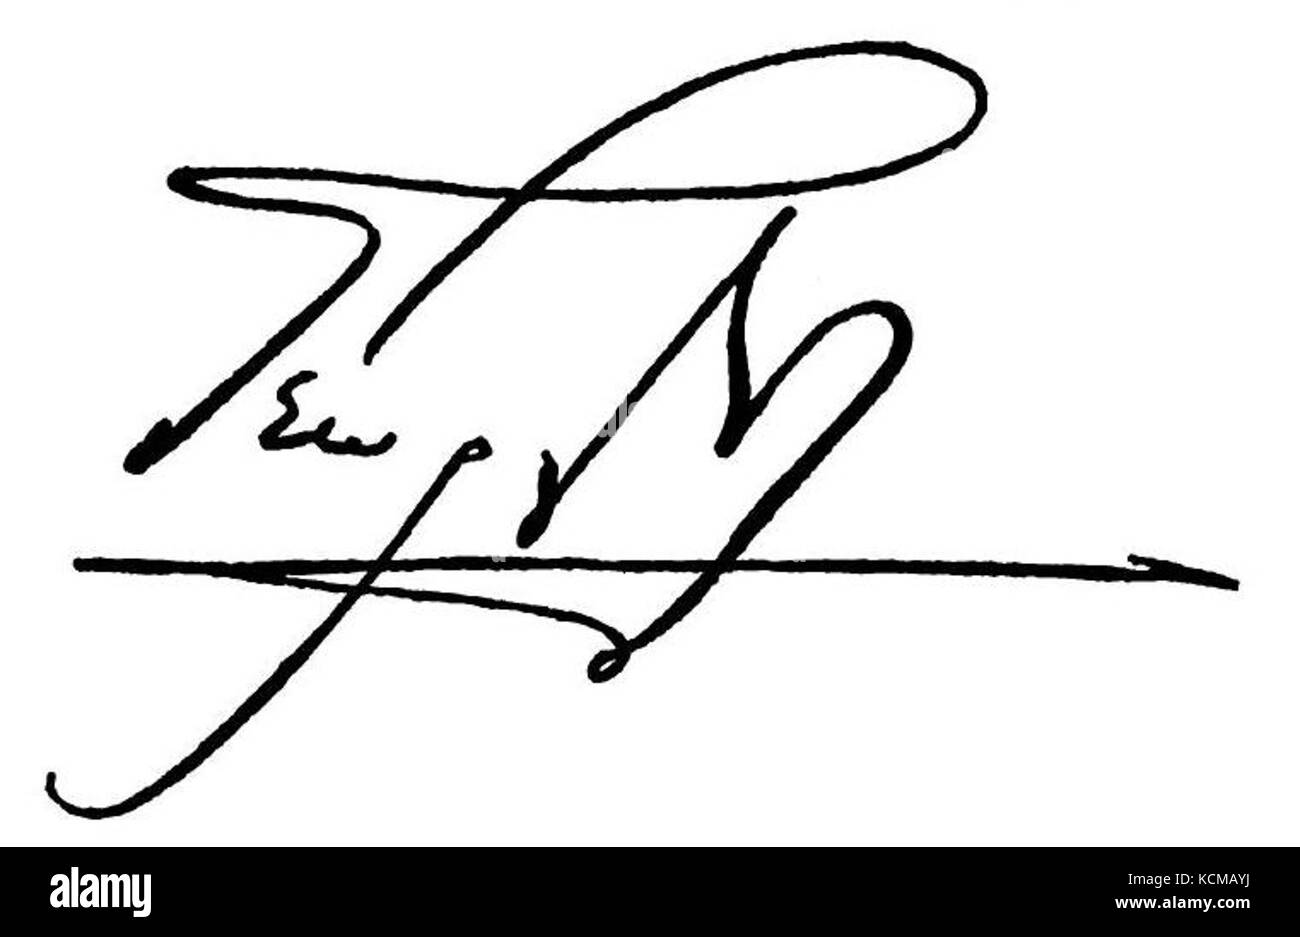 George I of Greece signature Stock Photo